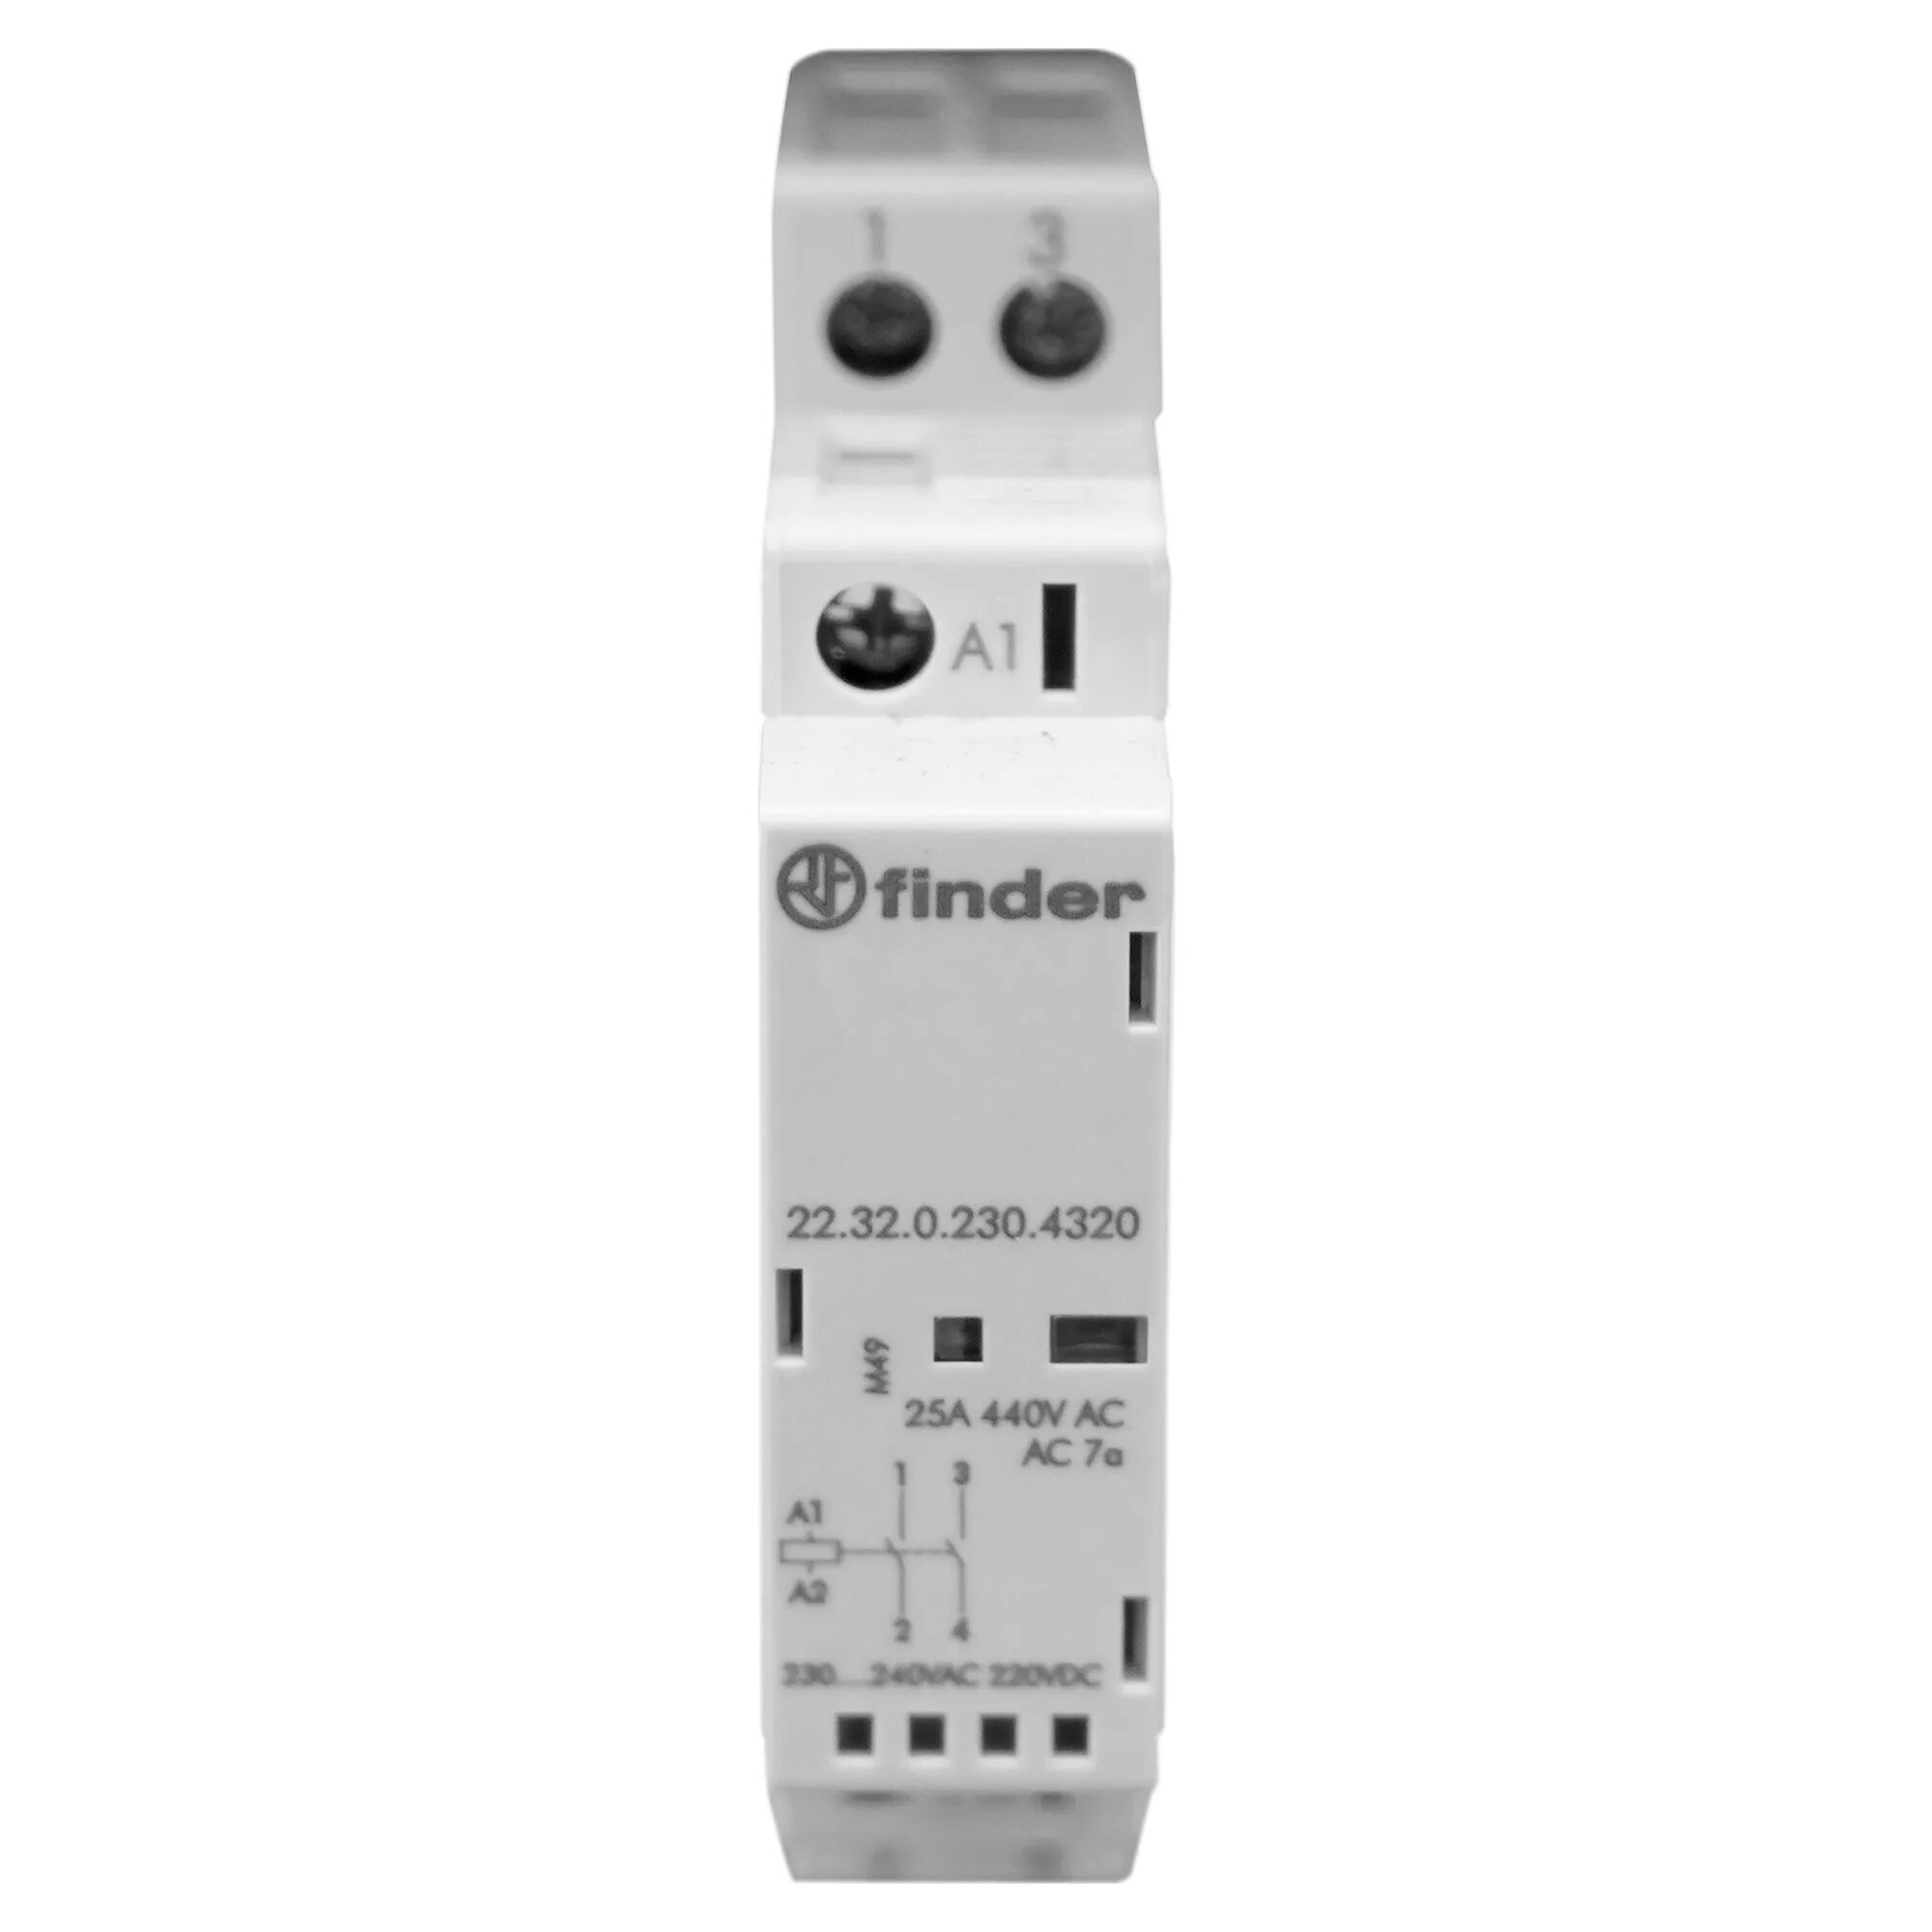 Finder CONTATTORE  MODULARE 230V 17,5 mm 2 NO 25A LED + INDICATORE MECCANICO